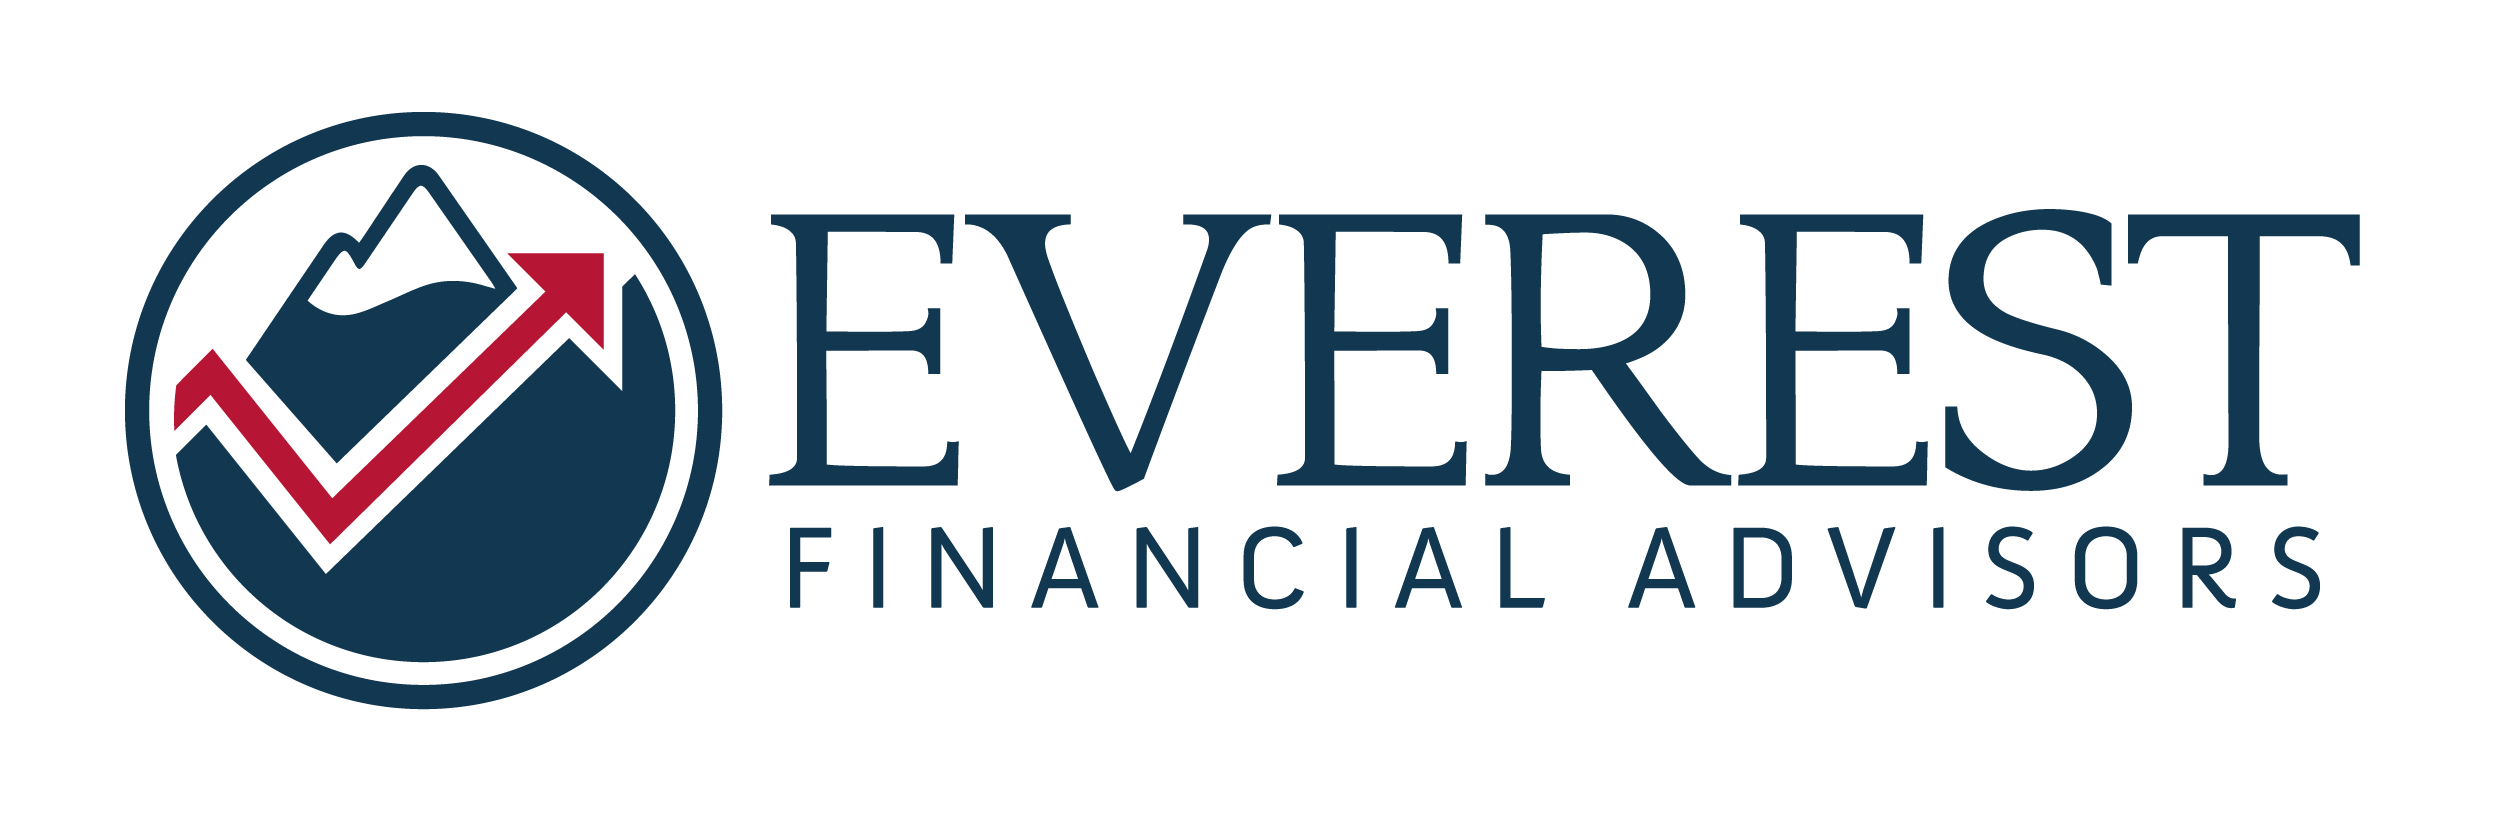 Everest Financial Advisors